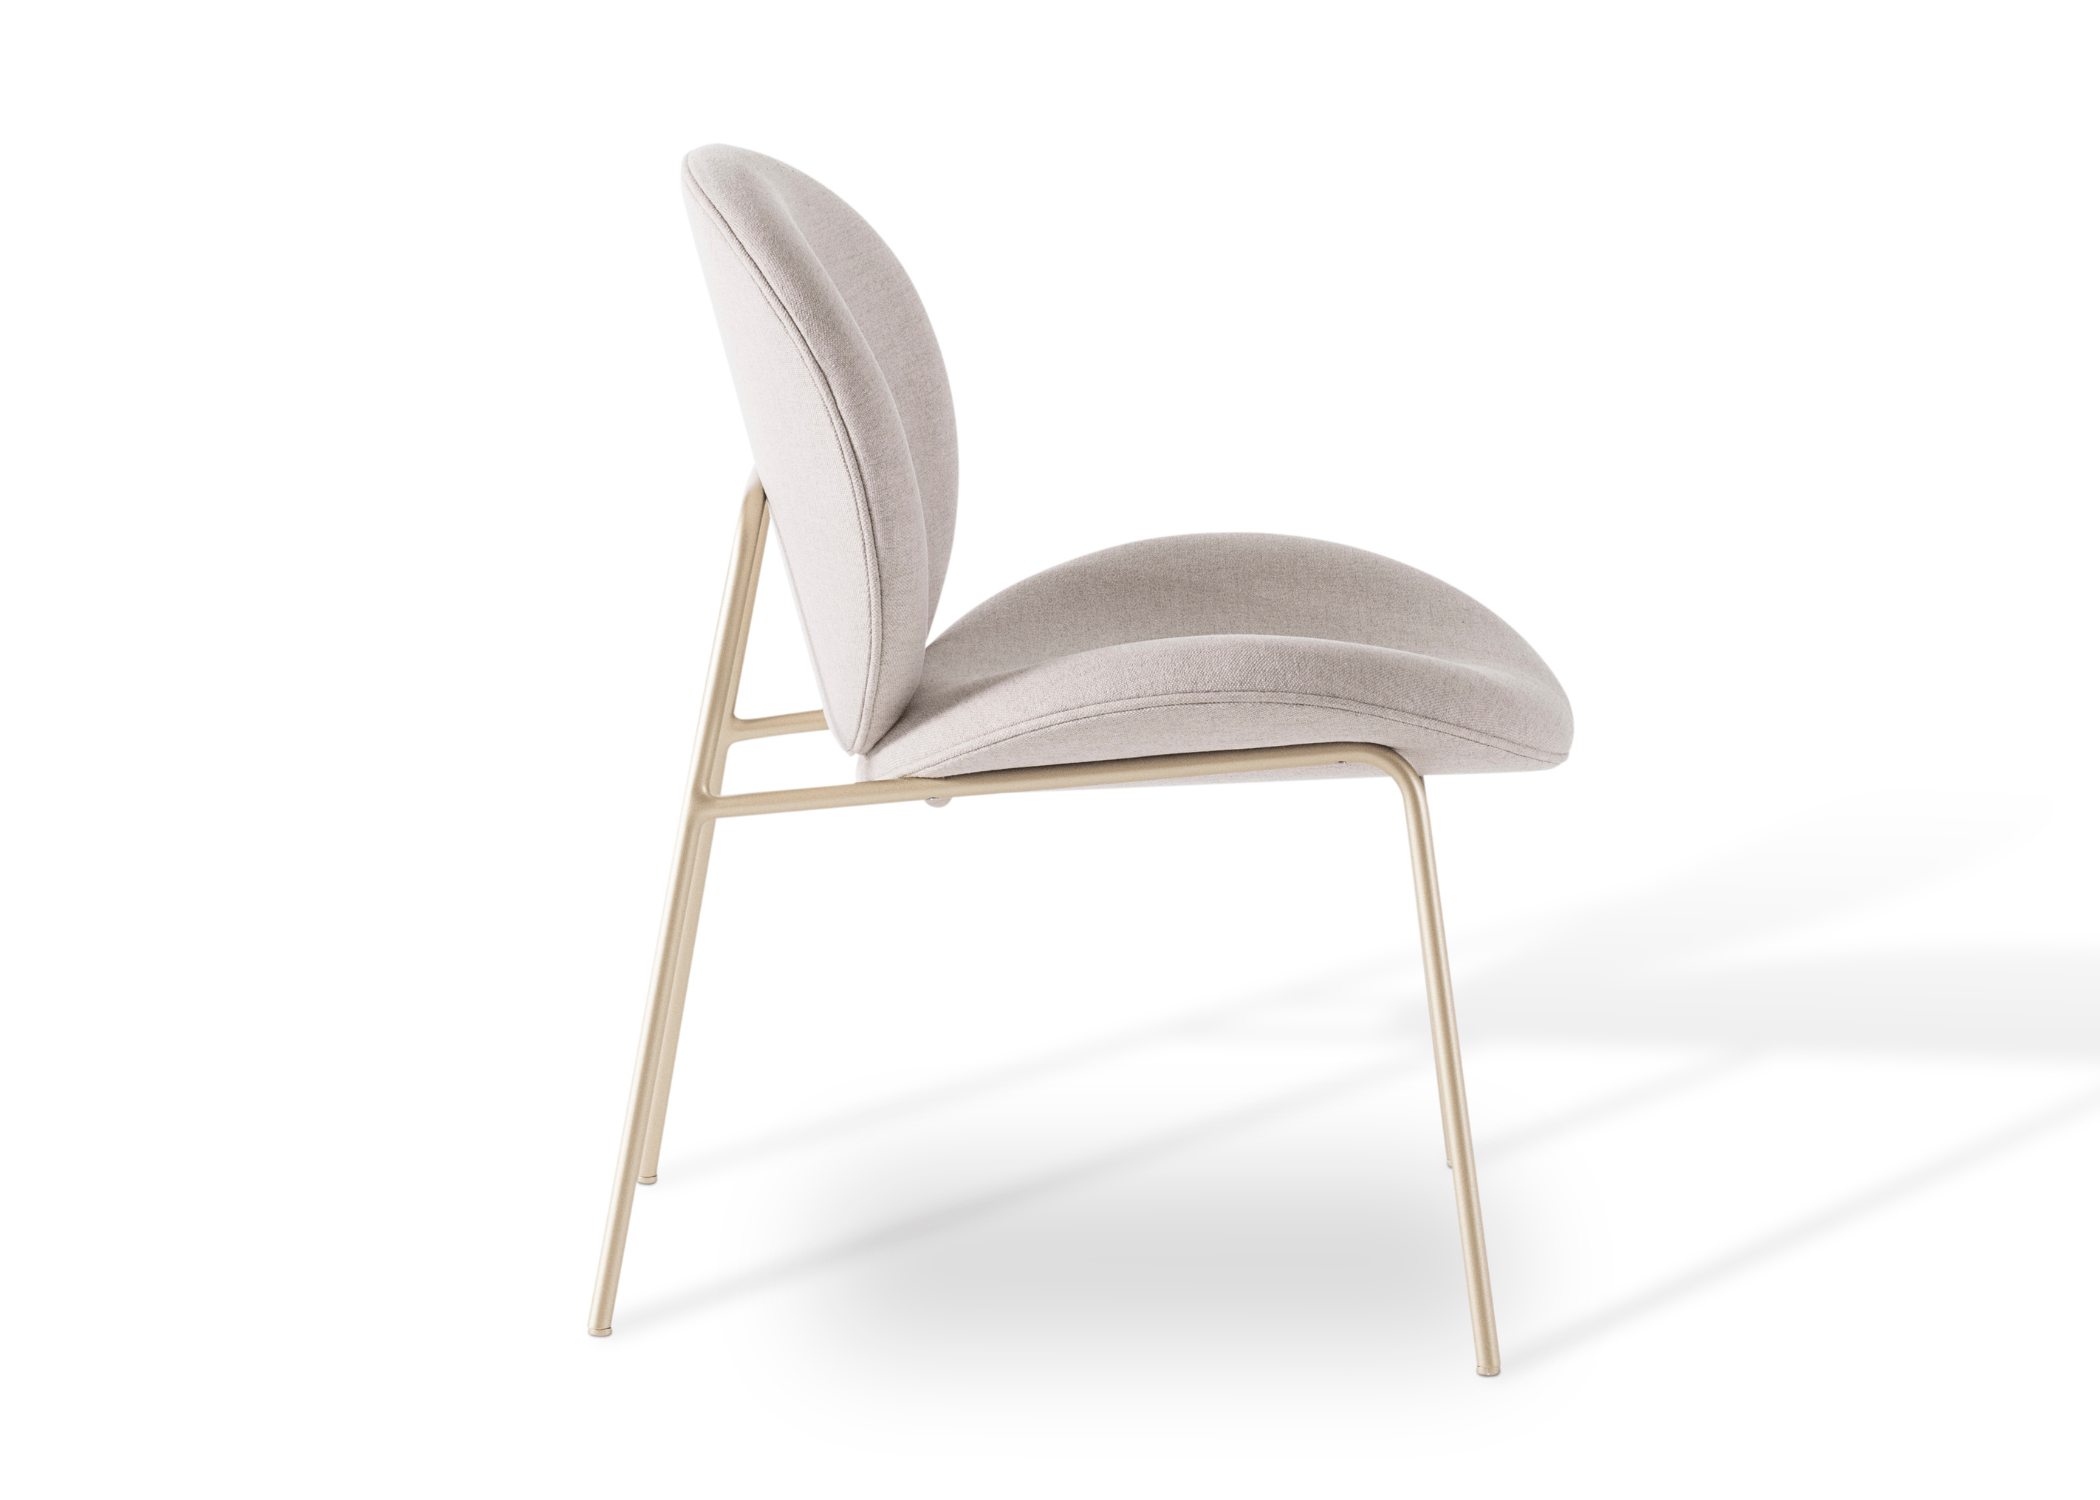 Cadeira Chloe em diferentes ângulos para apreciar seu design exclusivo.